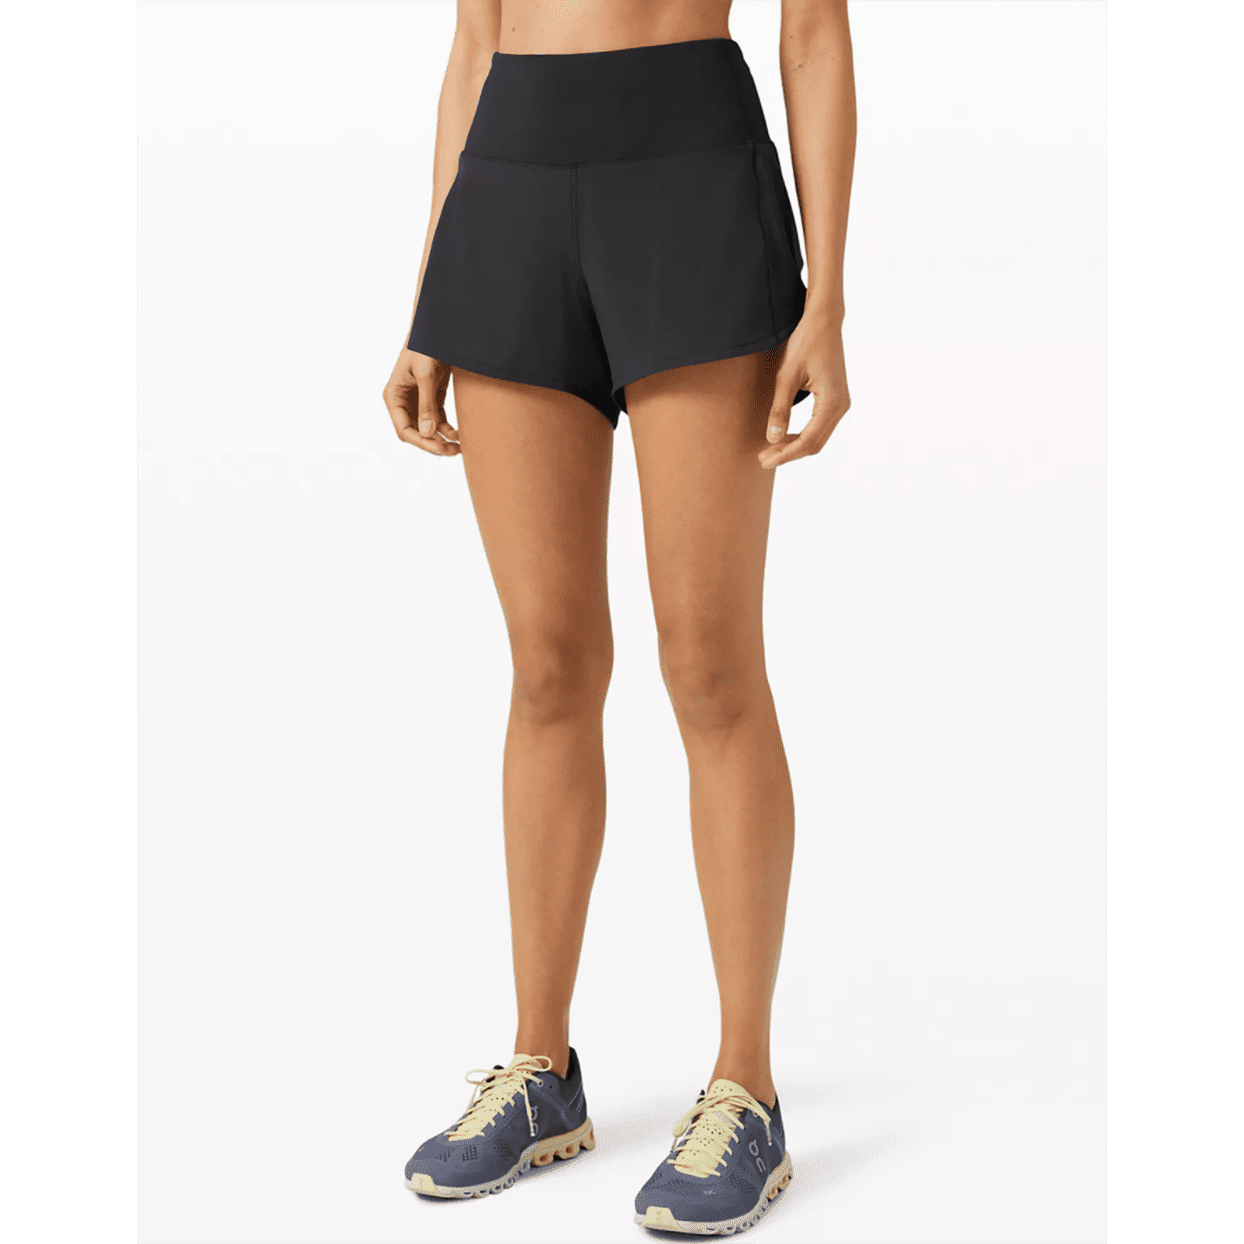 best running shorts lululemon